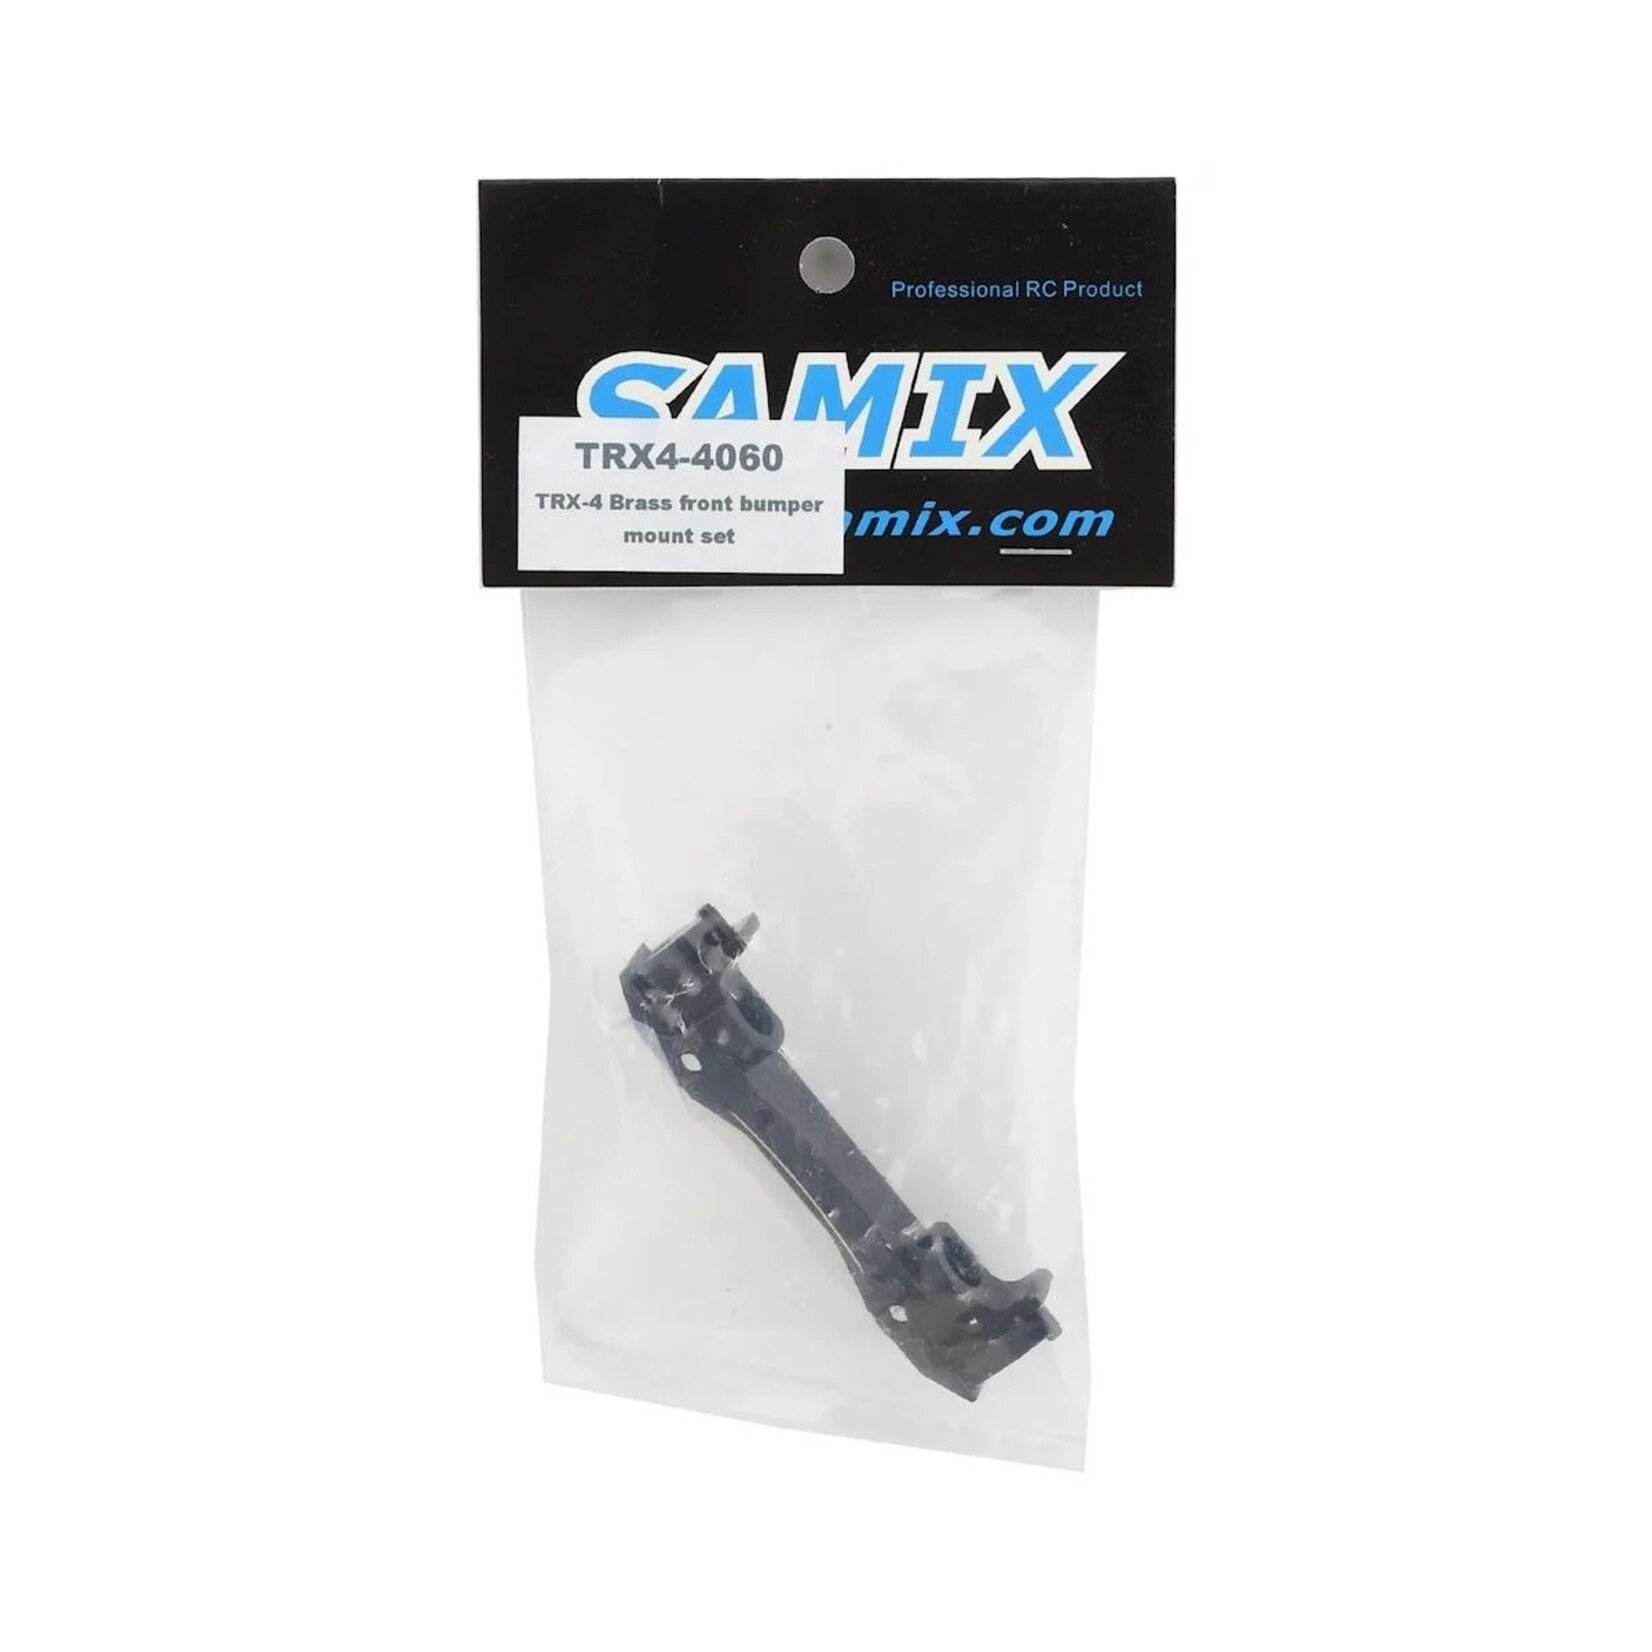 Samix Samix Traxxas TRX-4 Brass Front Bumper Mount Set (Black) #SAMTRX4-4060